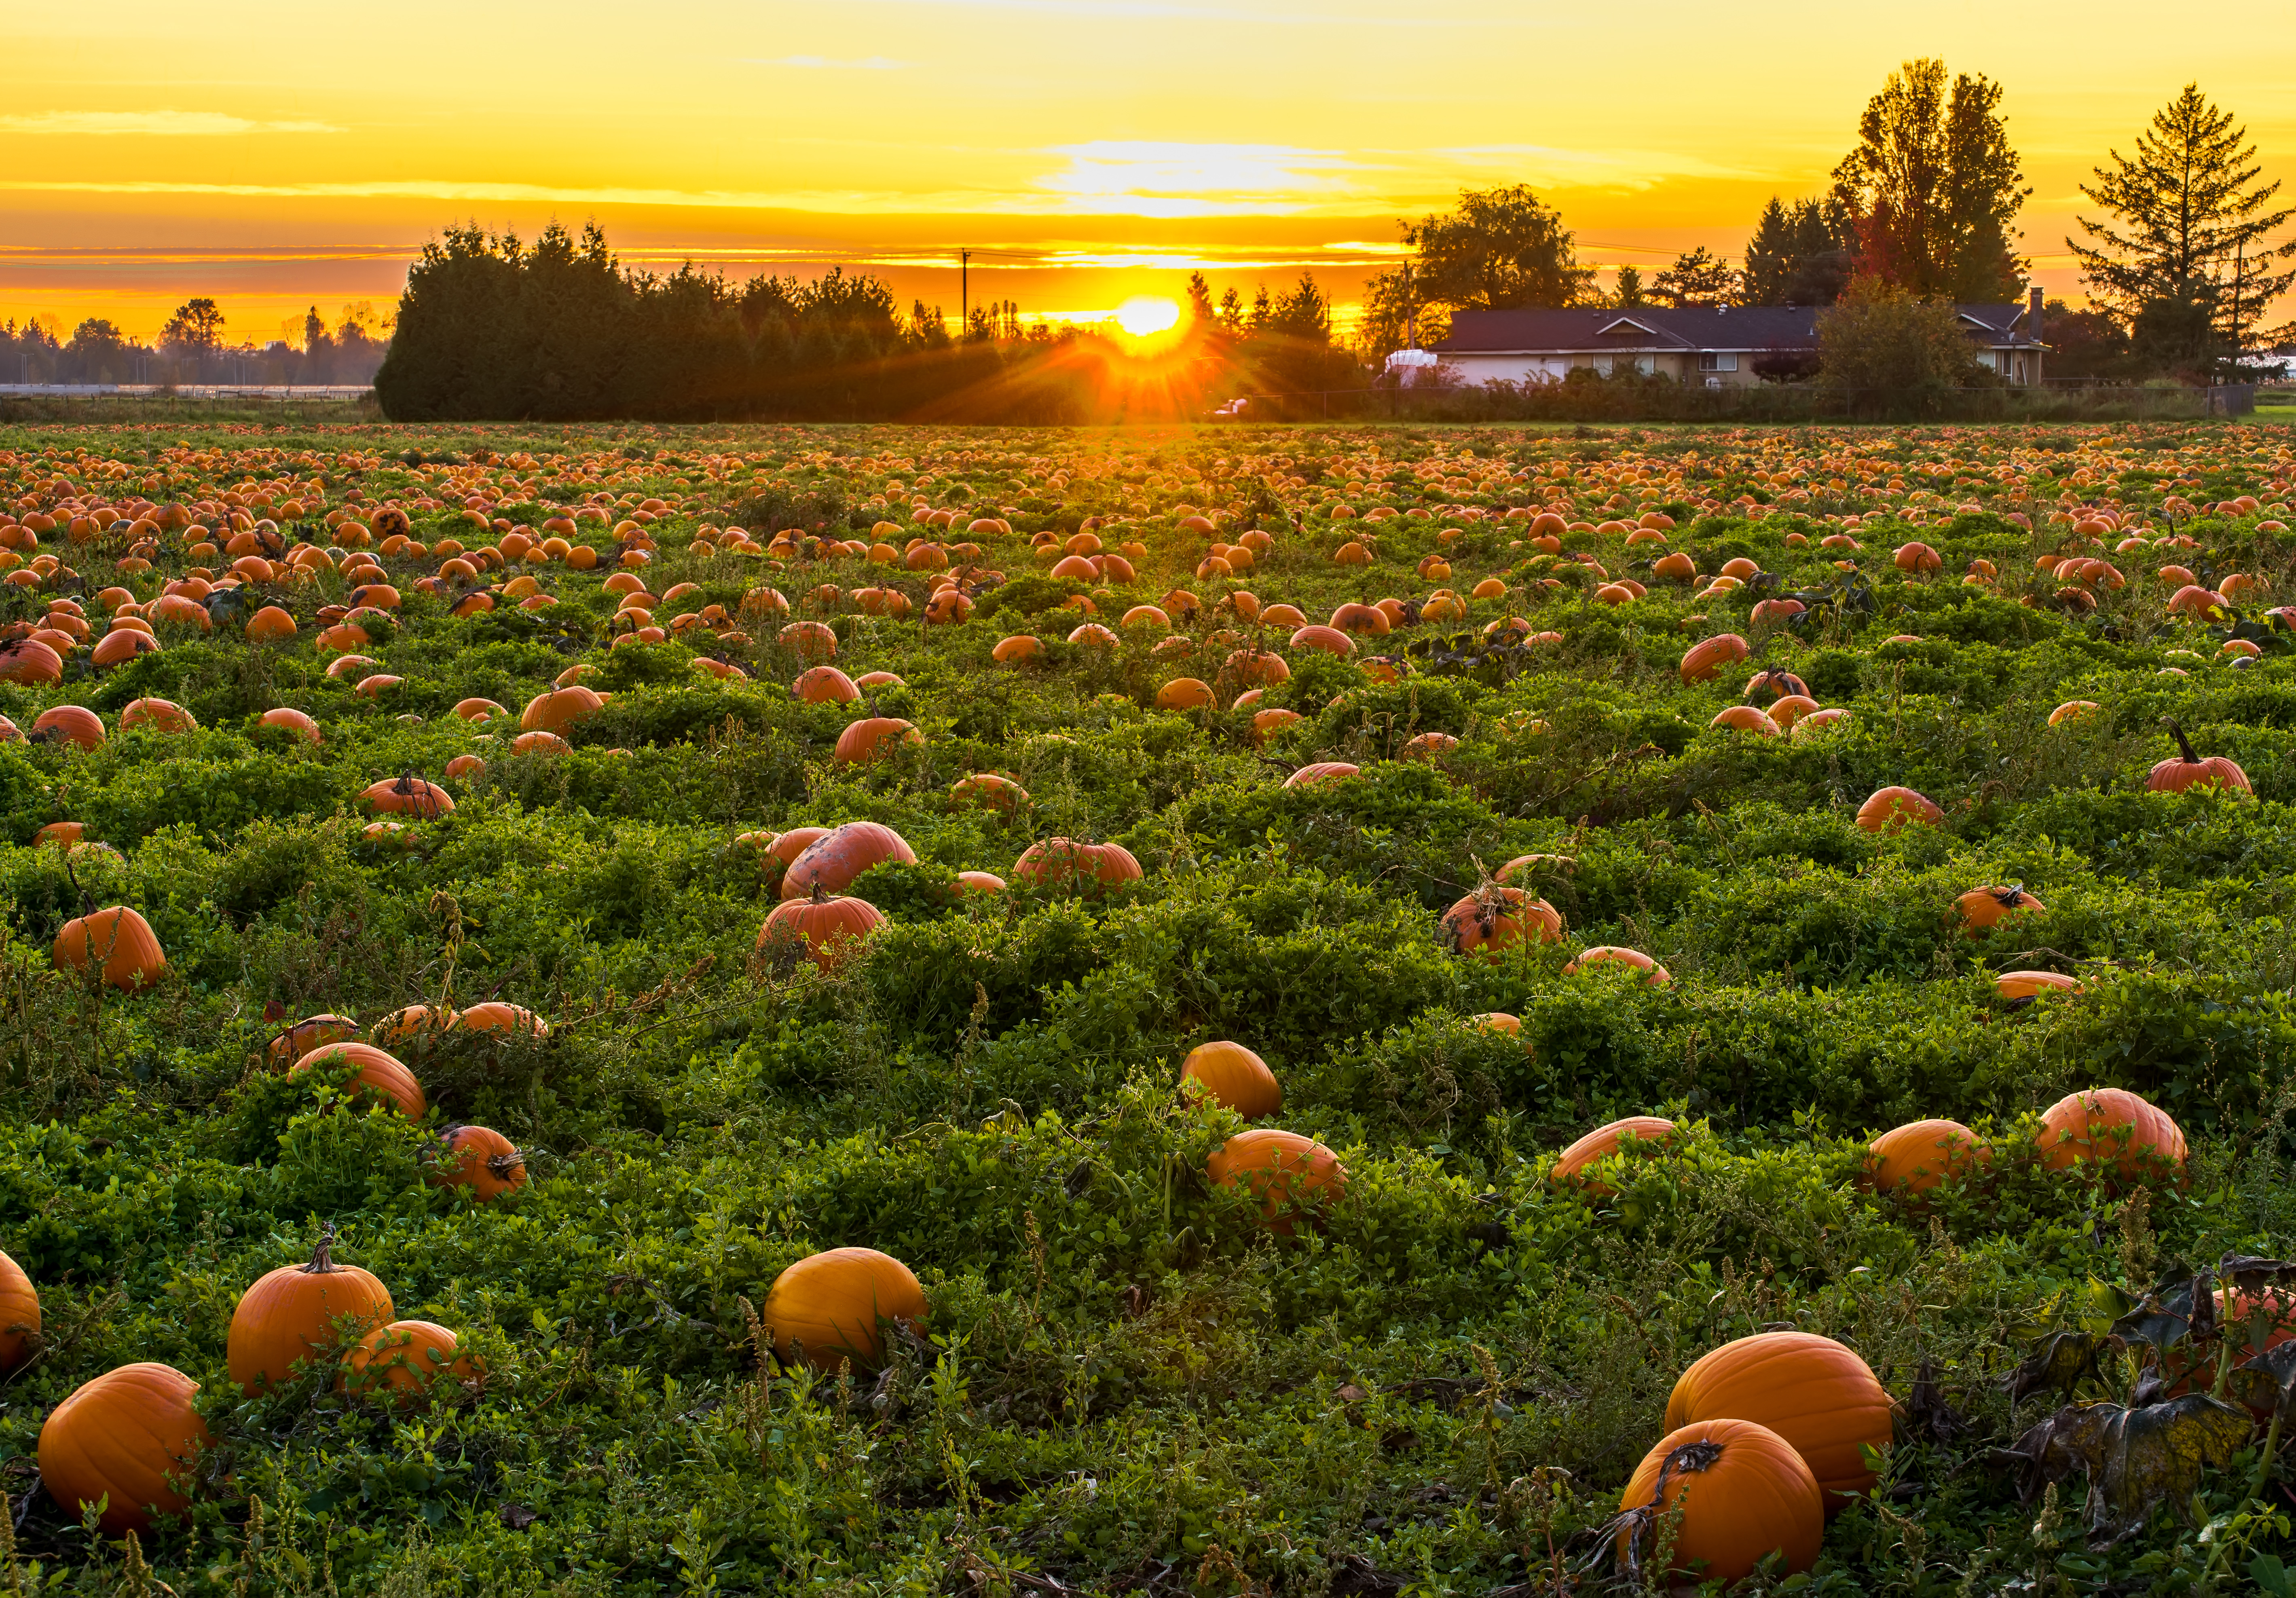 Pumpkin patch during sunset